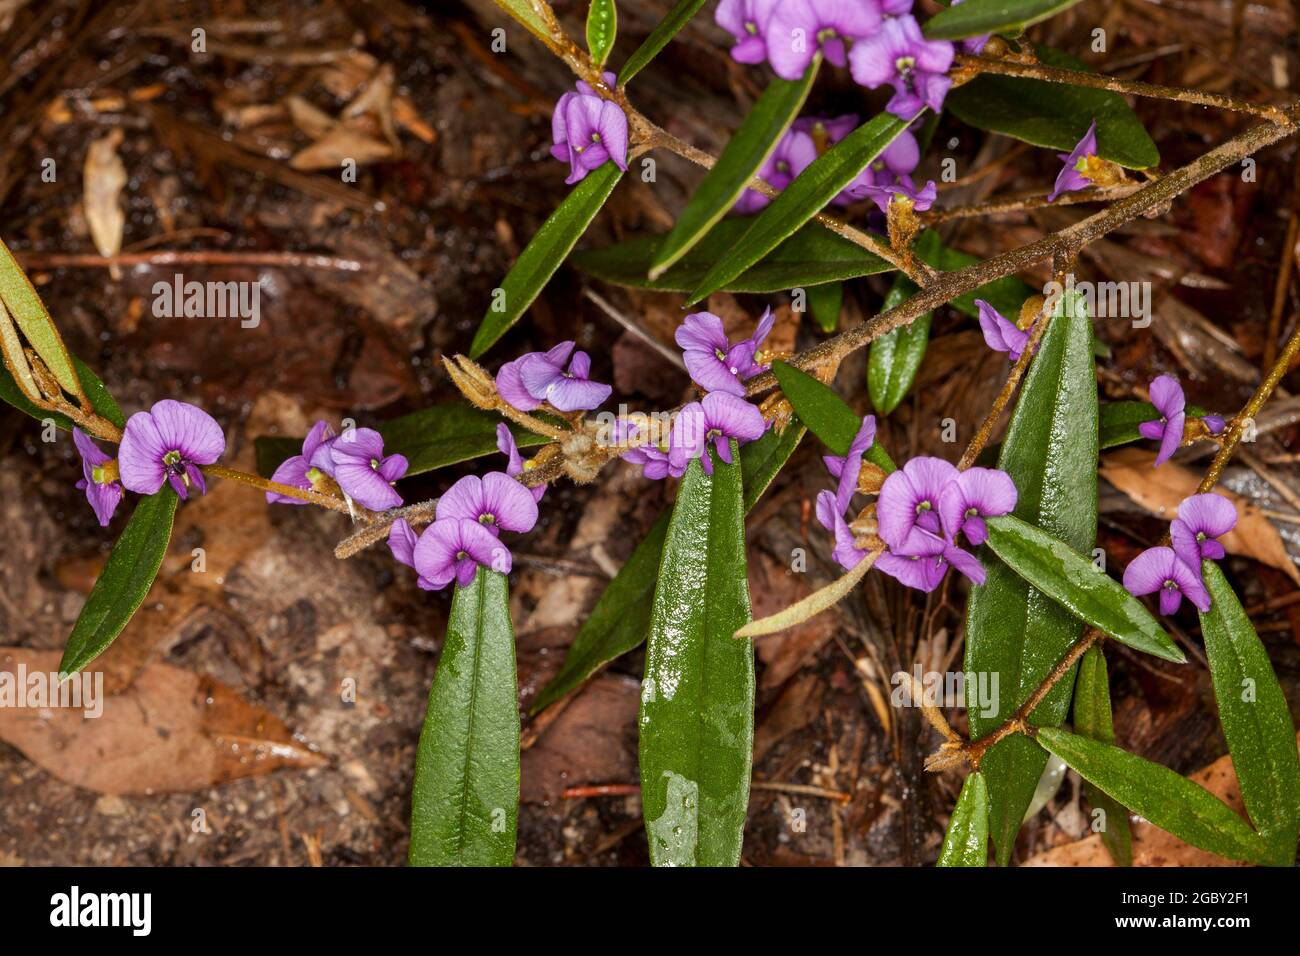 Fleurs sauvages colorées, fleurs violets vives et feuilles vert foncé de Hovea acutifolia, Violet Pea Bush, un arbuste australien Banque D'Images